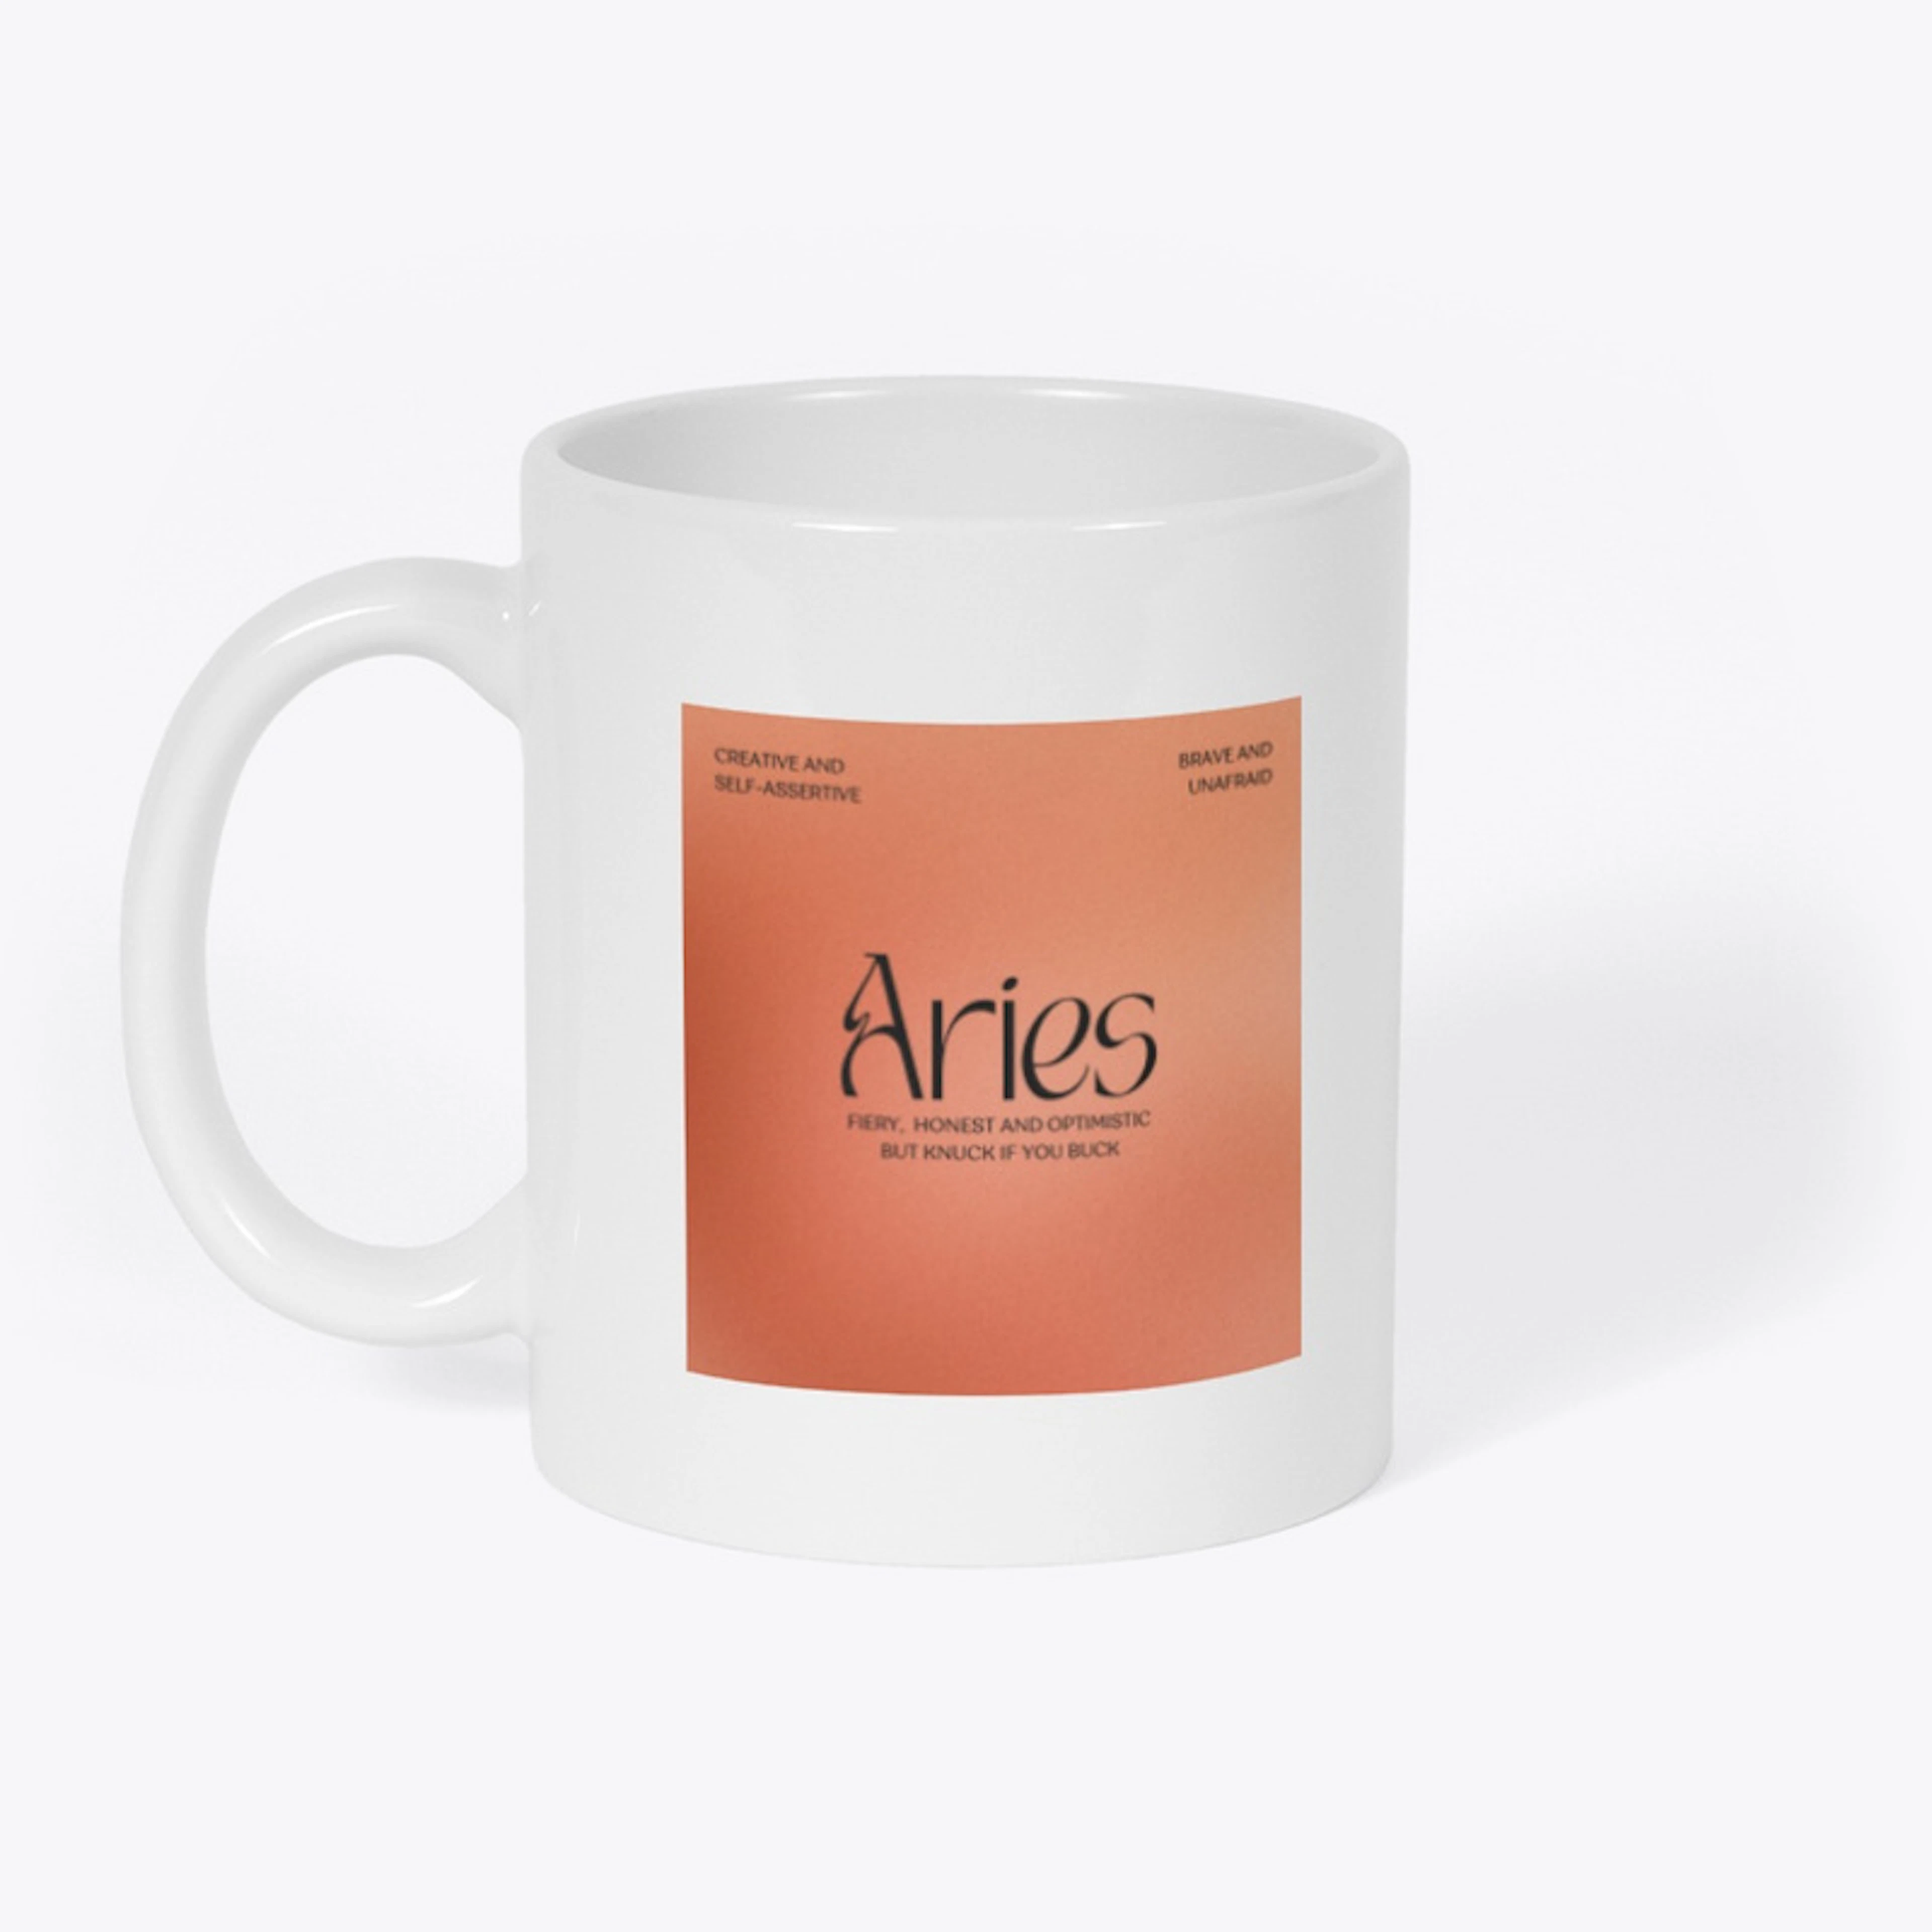 Aries, mug